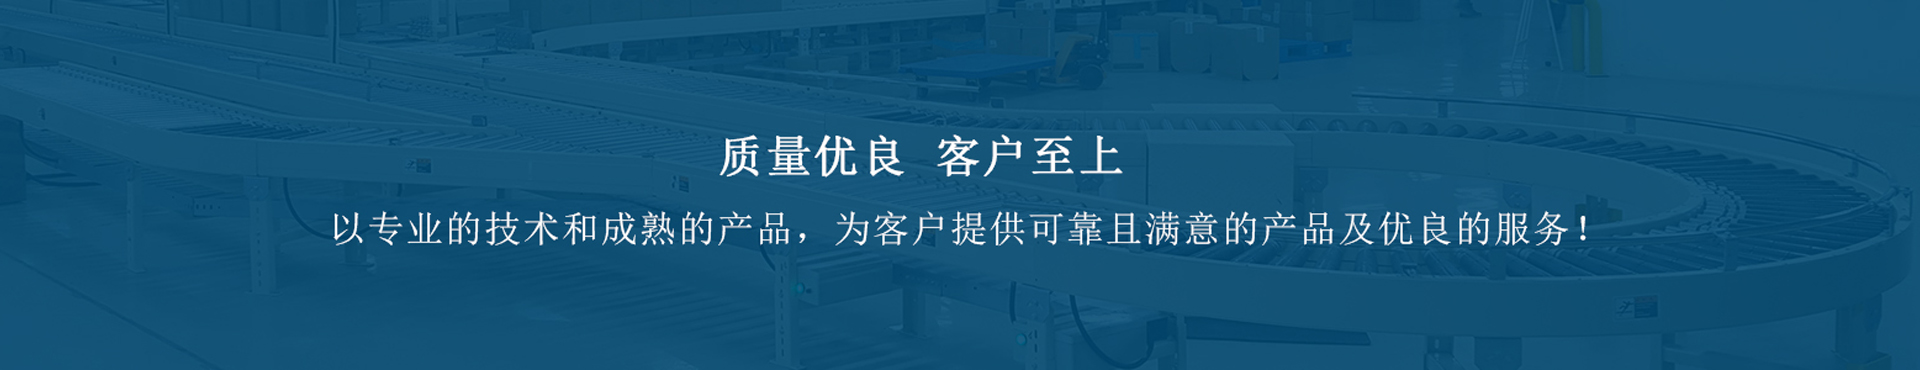 上海帛钛机械设备有限公司